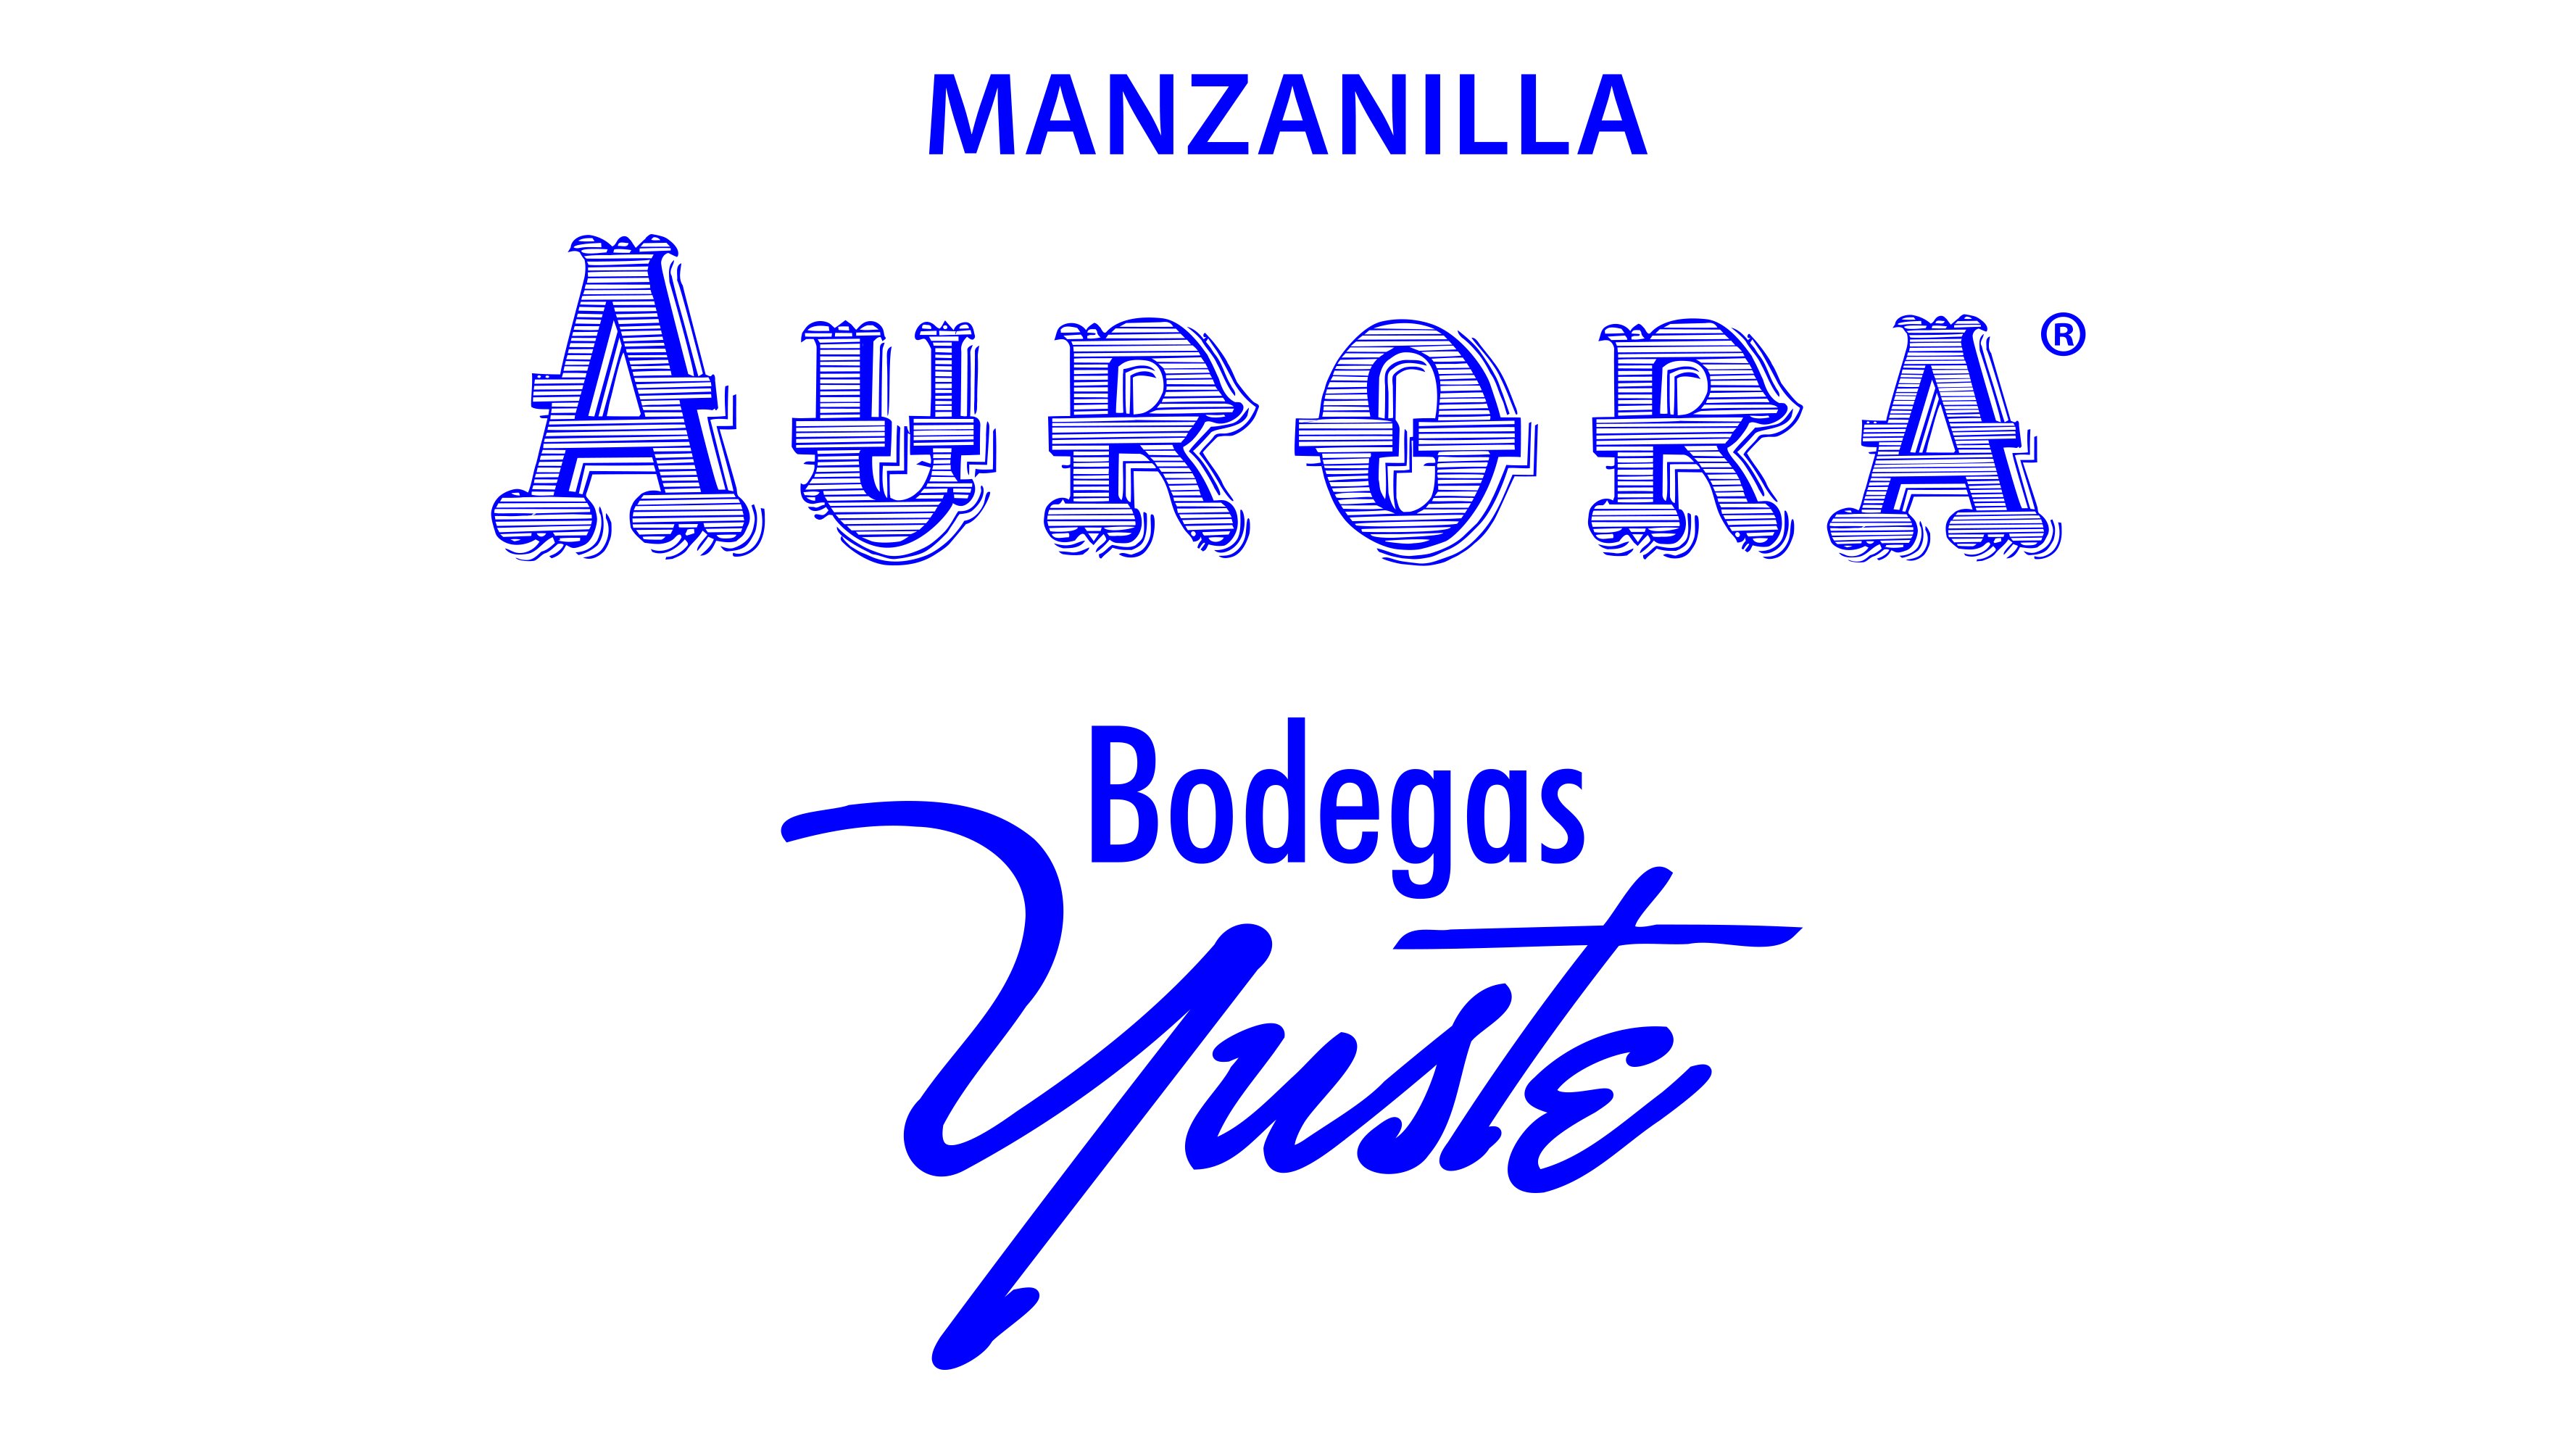 Manzanilla Aurora